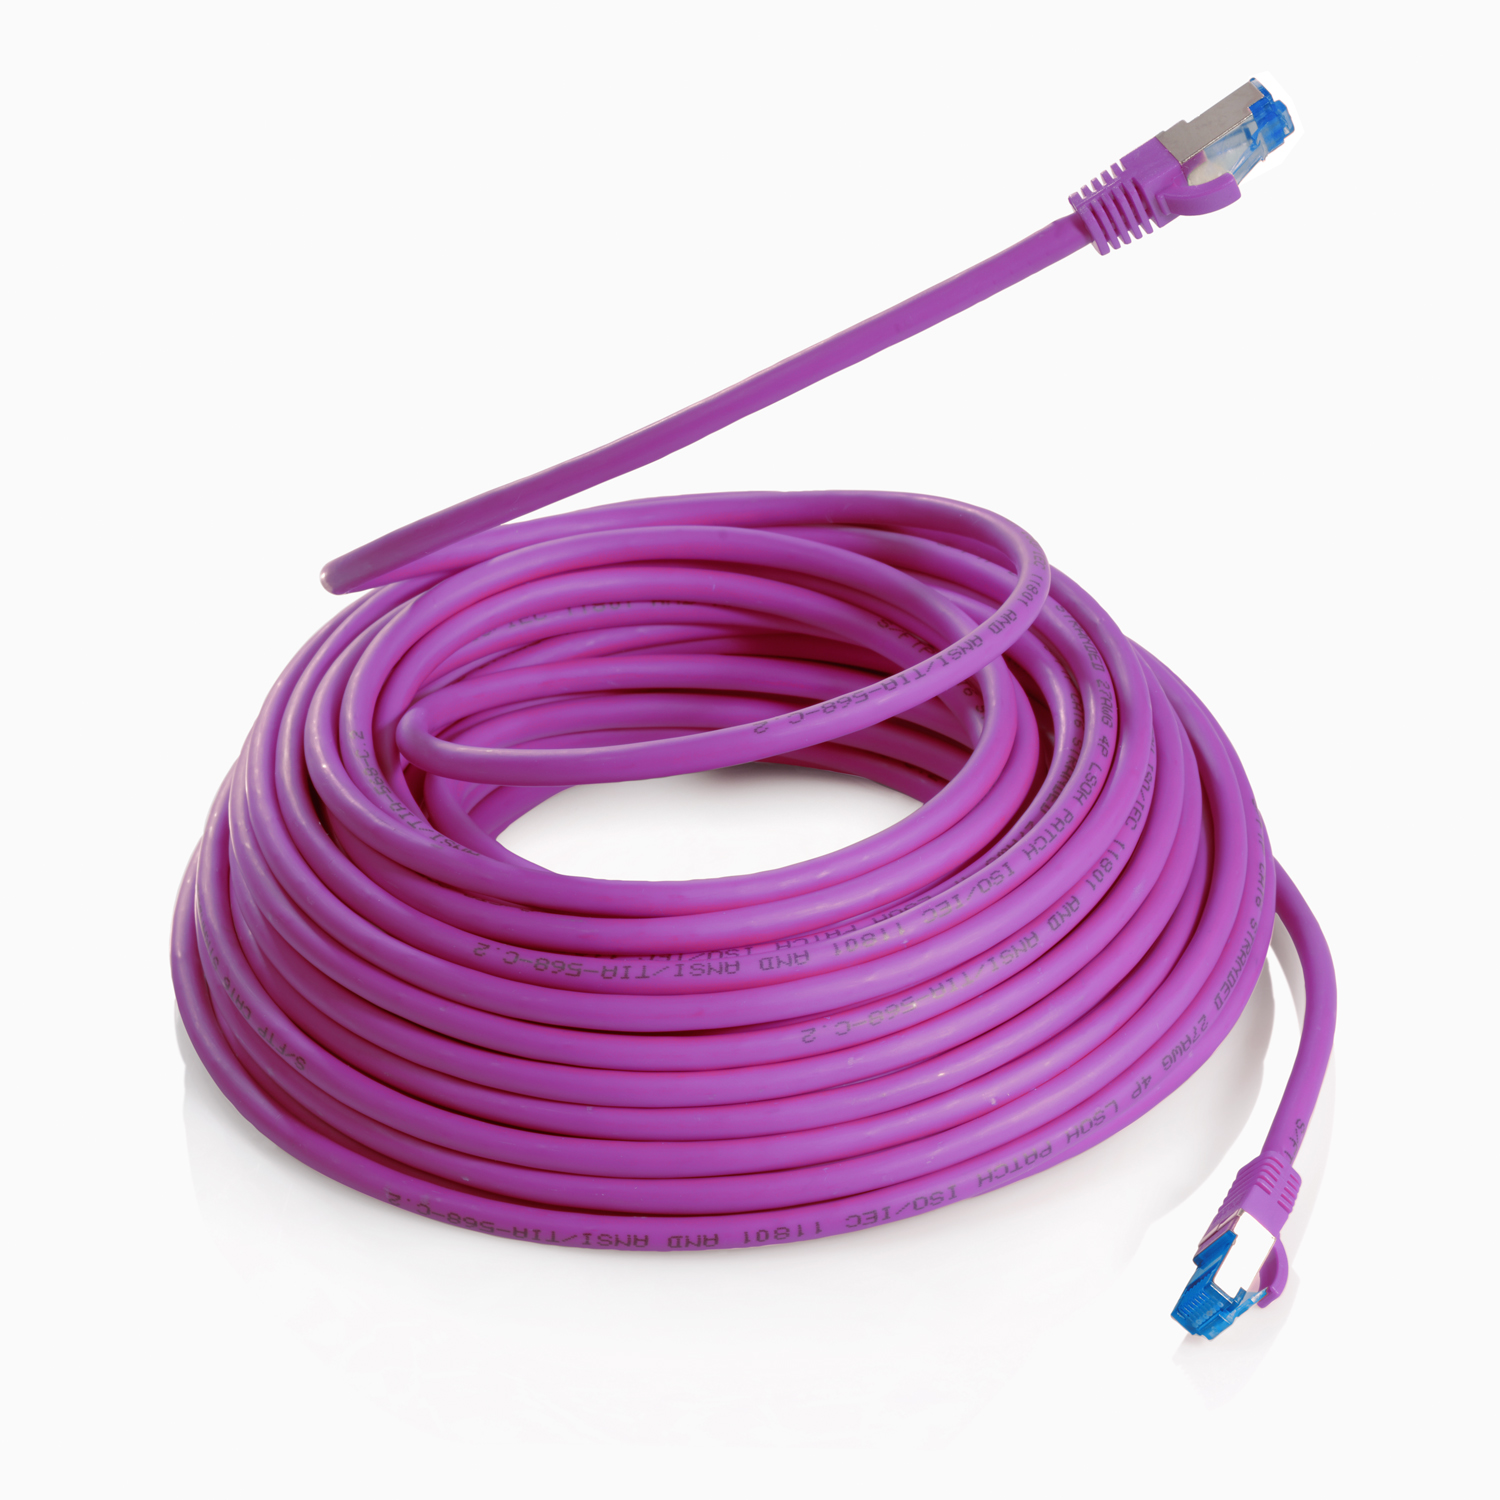 10GBit, m Patchkabel 0,50m / violett, S/FTP TPFNET Netzwerkkabel, Netzwerkkabel 0,5